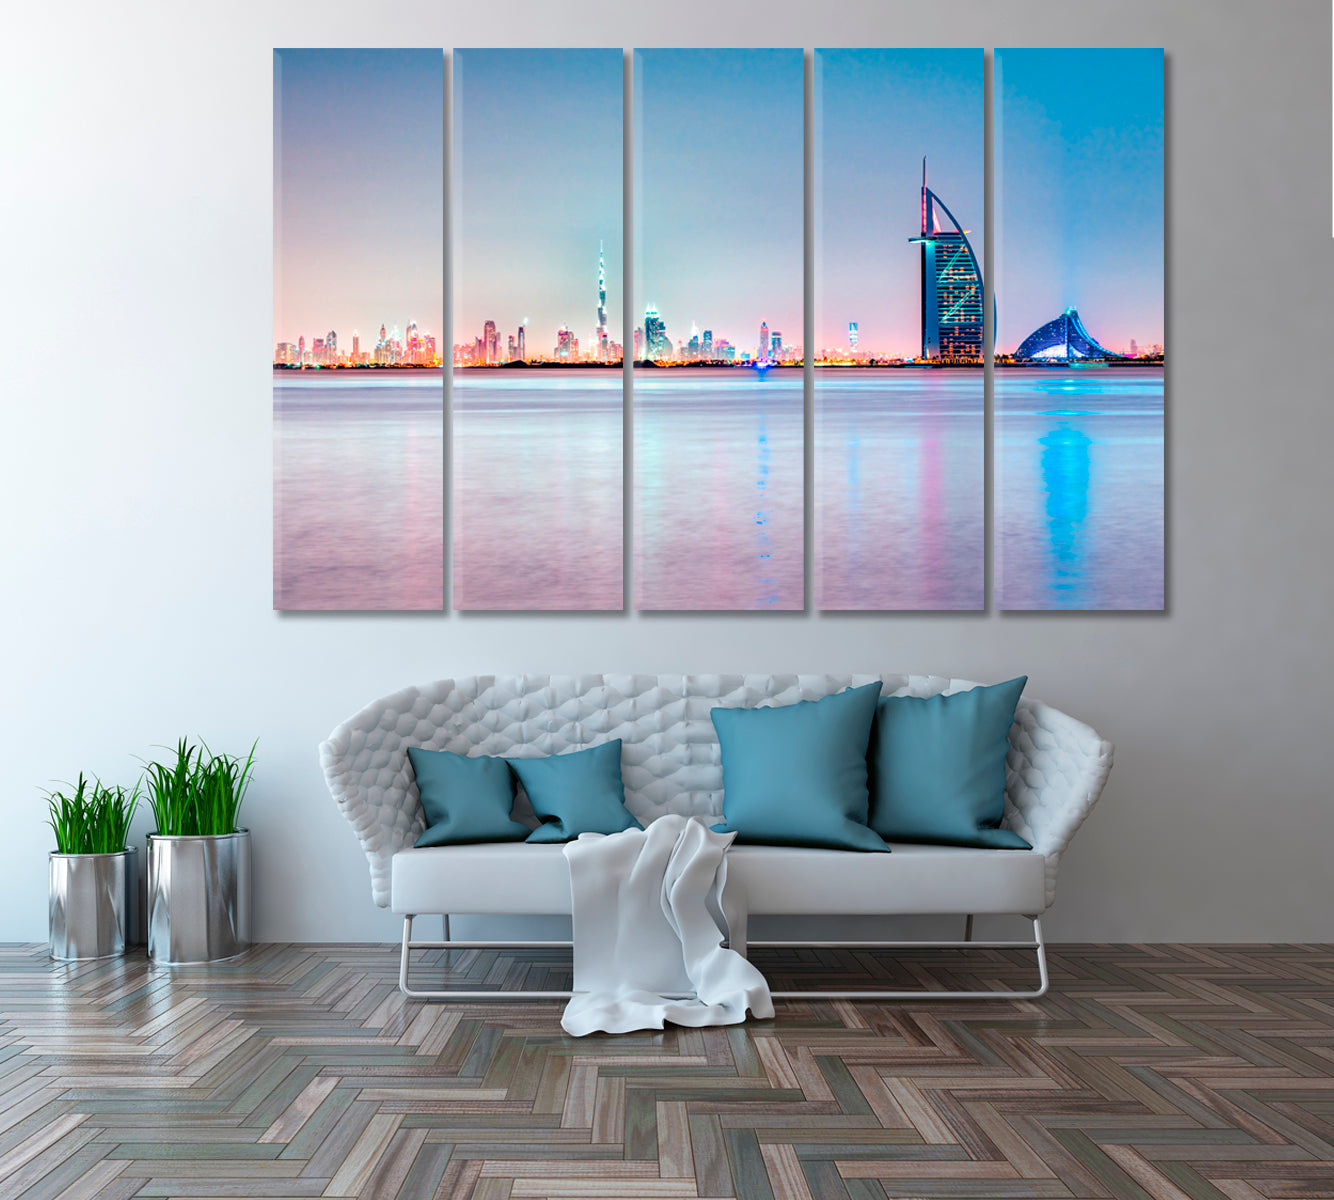 Burj Al Arab at Dusk Dubai Canvas Print ArtLexy 5 Panels 36"x24" inches 